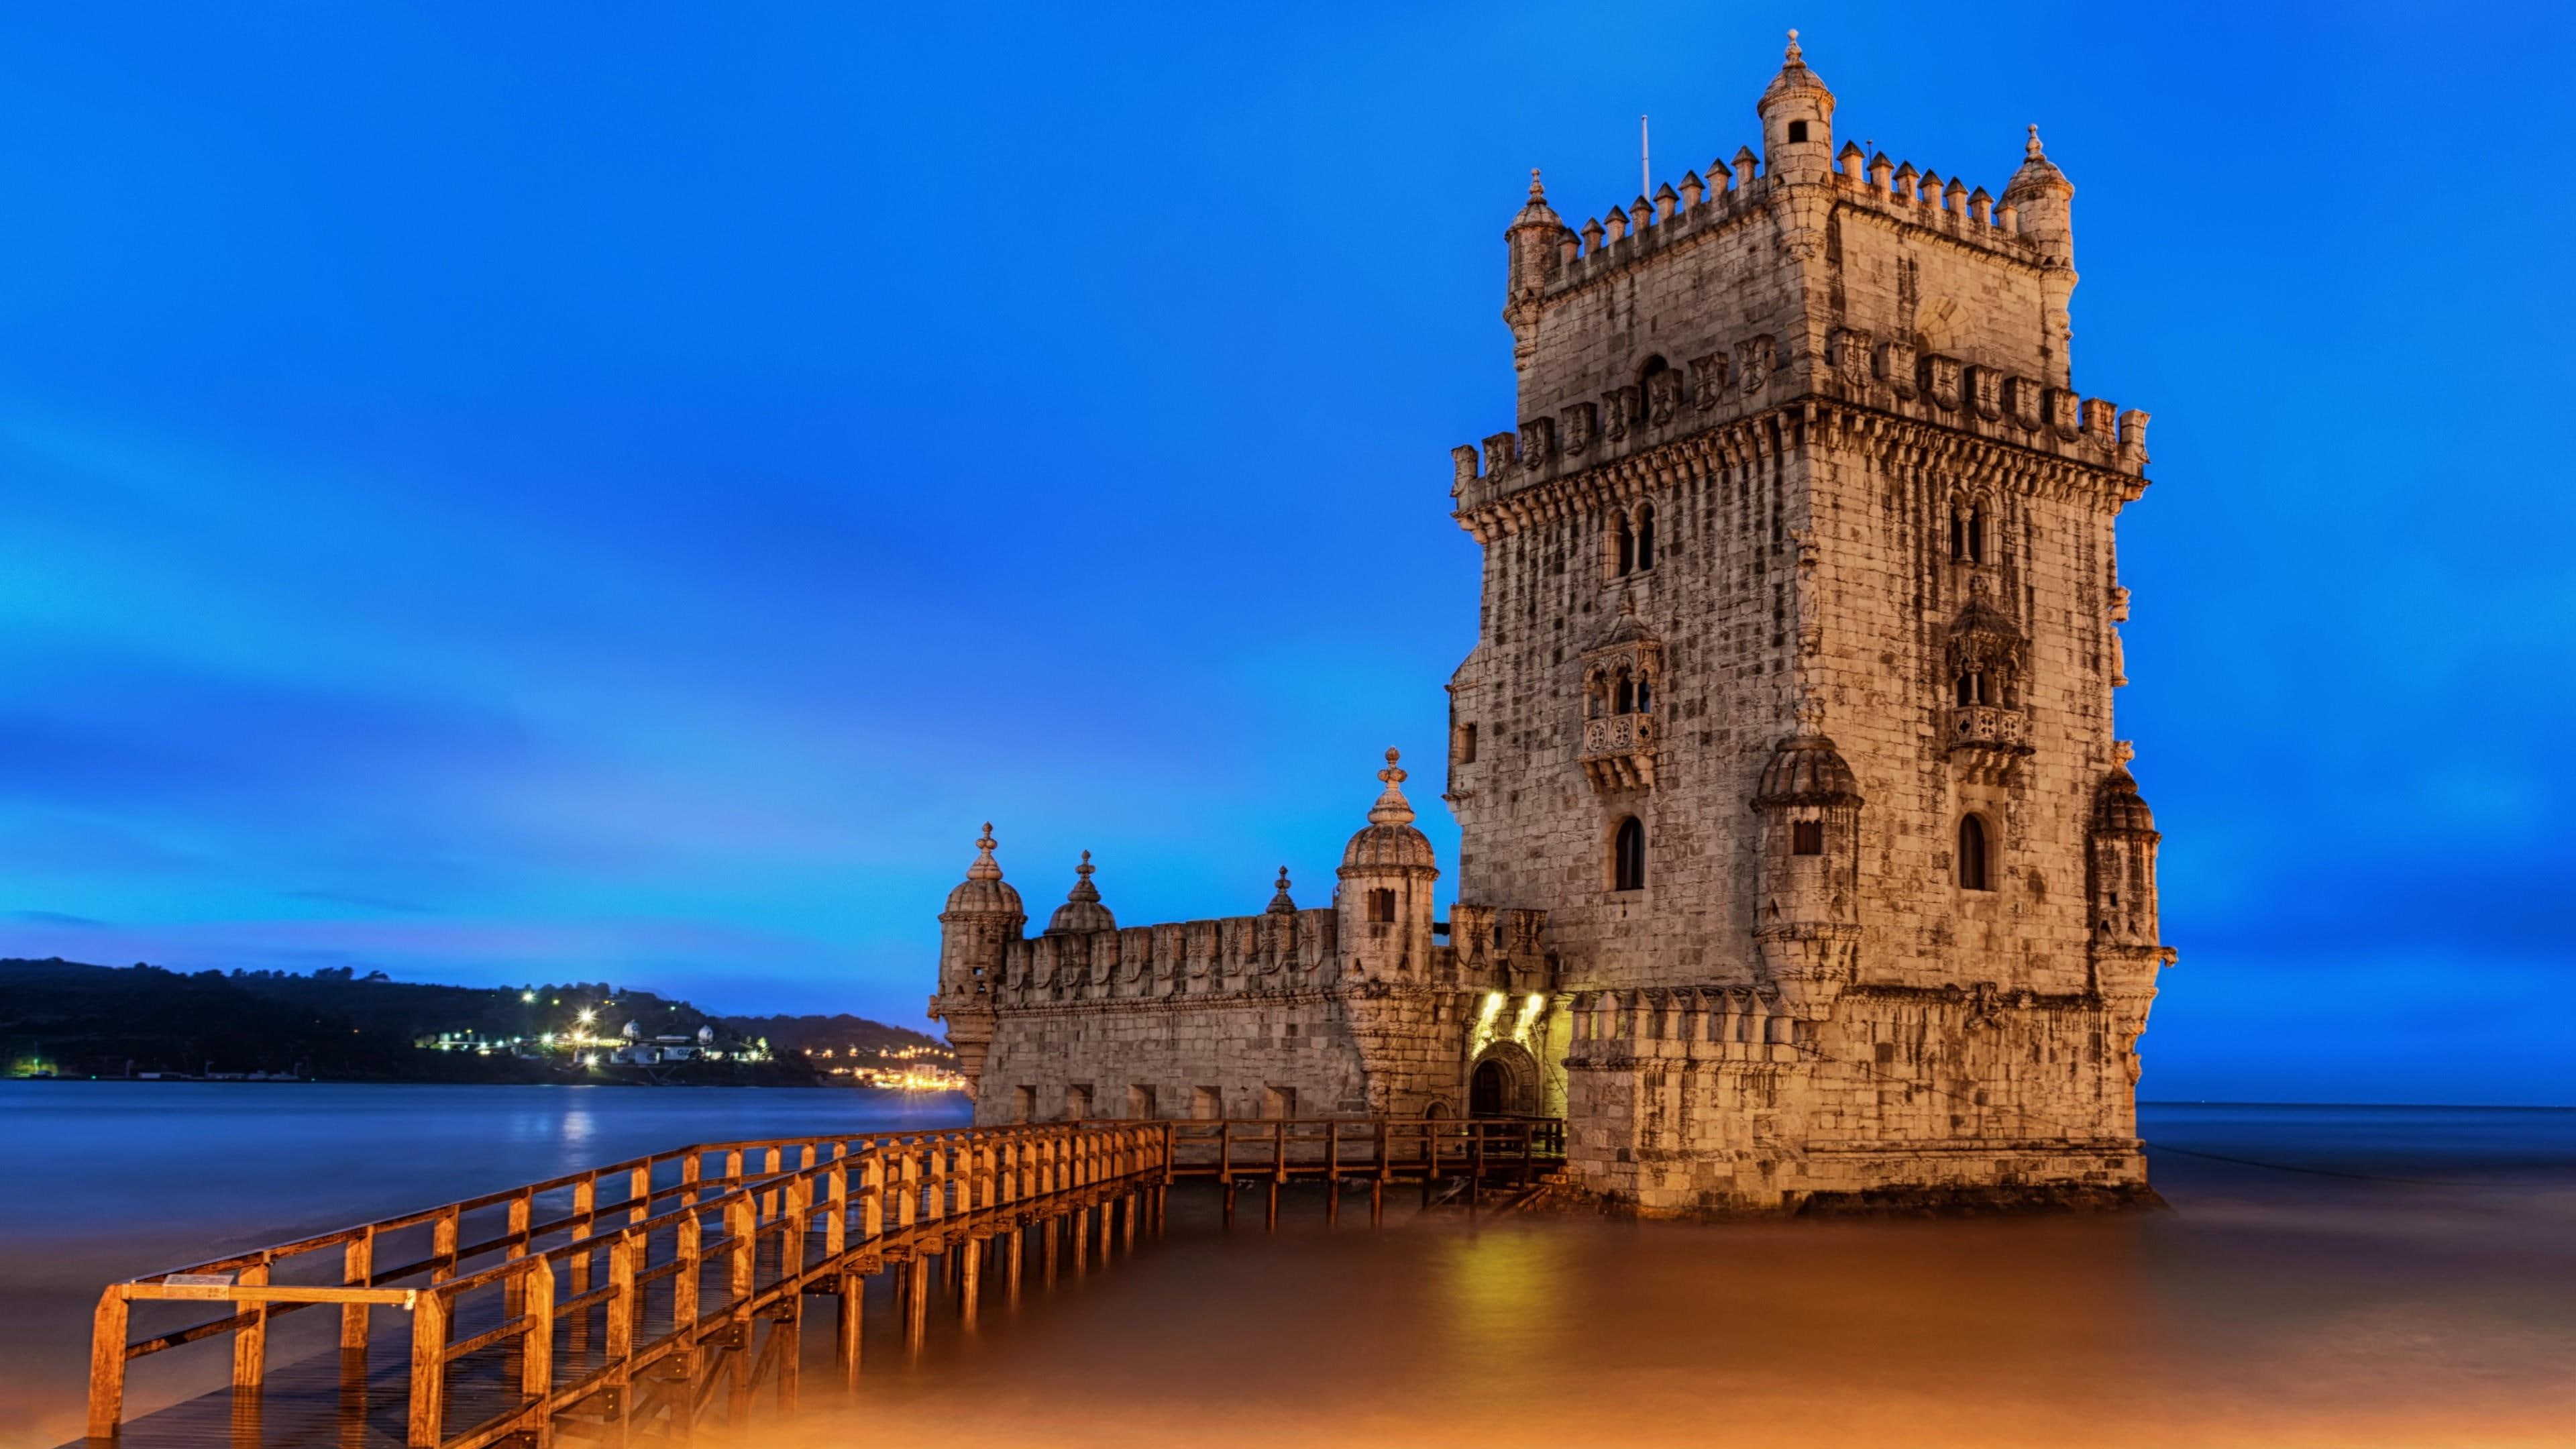 torre de belem, belem tower, lisbon, portugal, dusk, evening